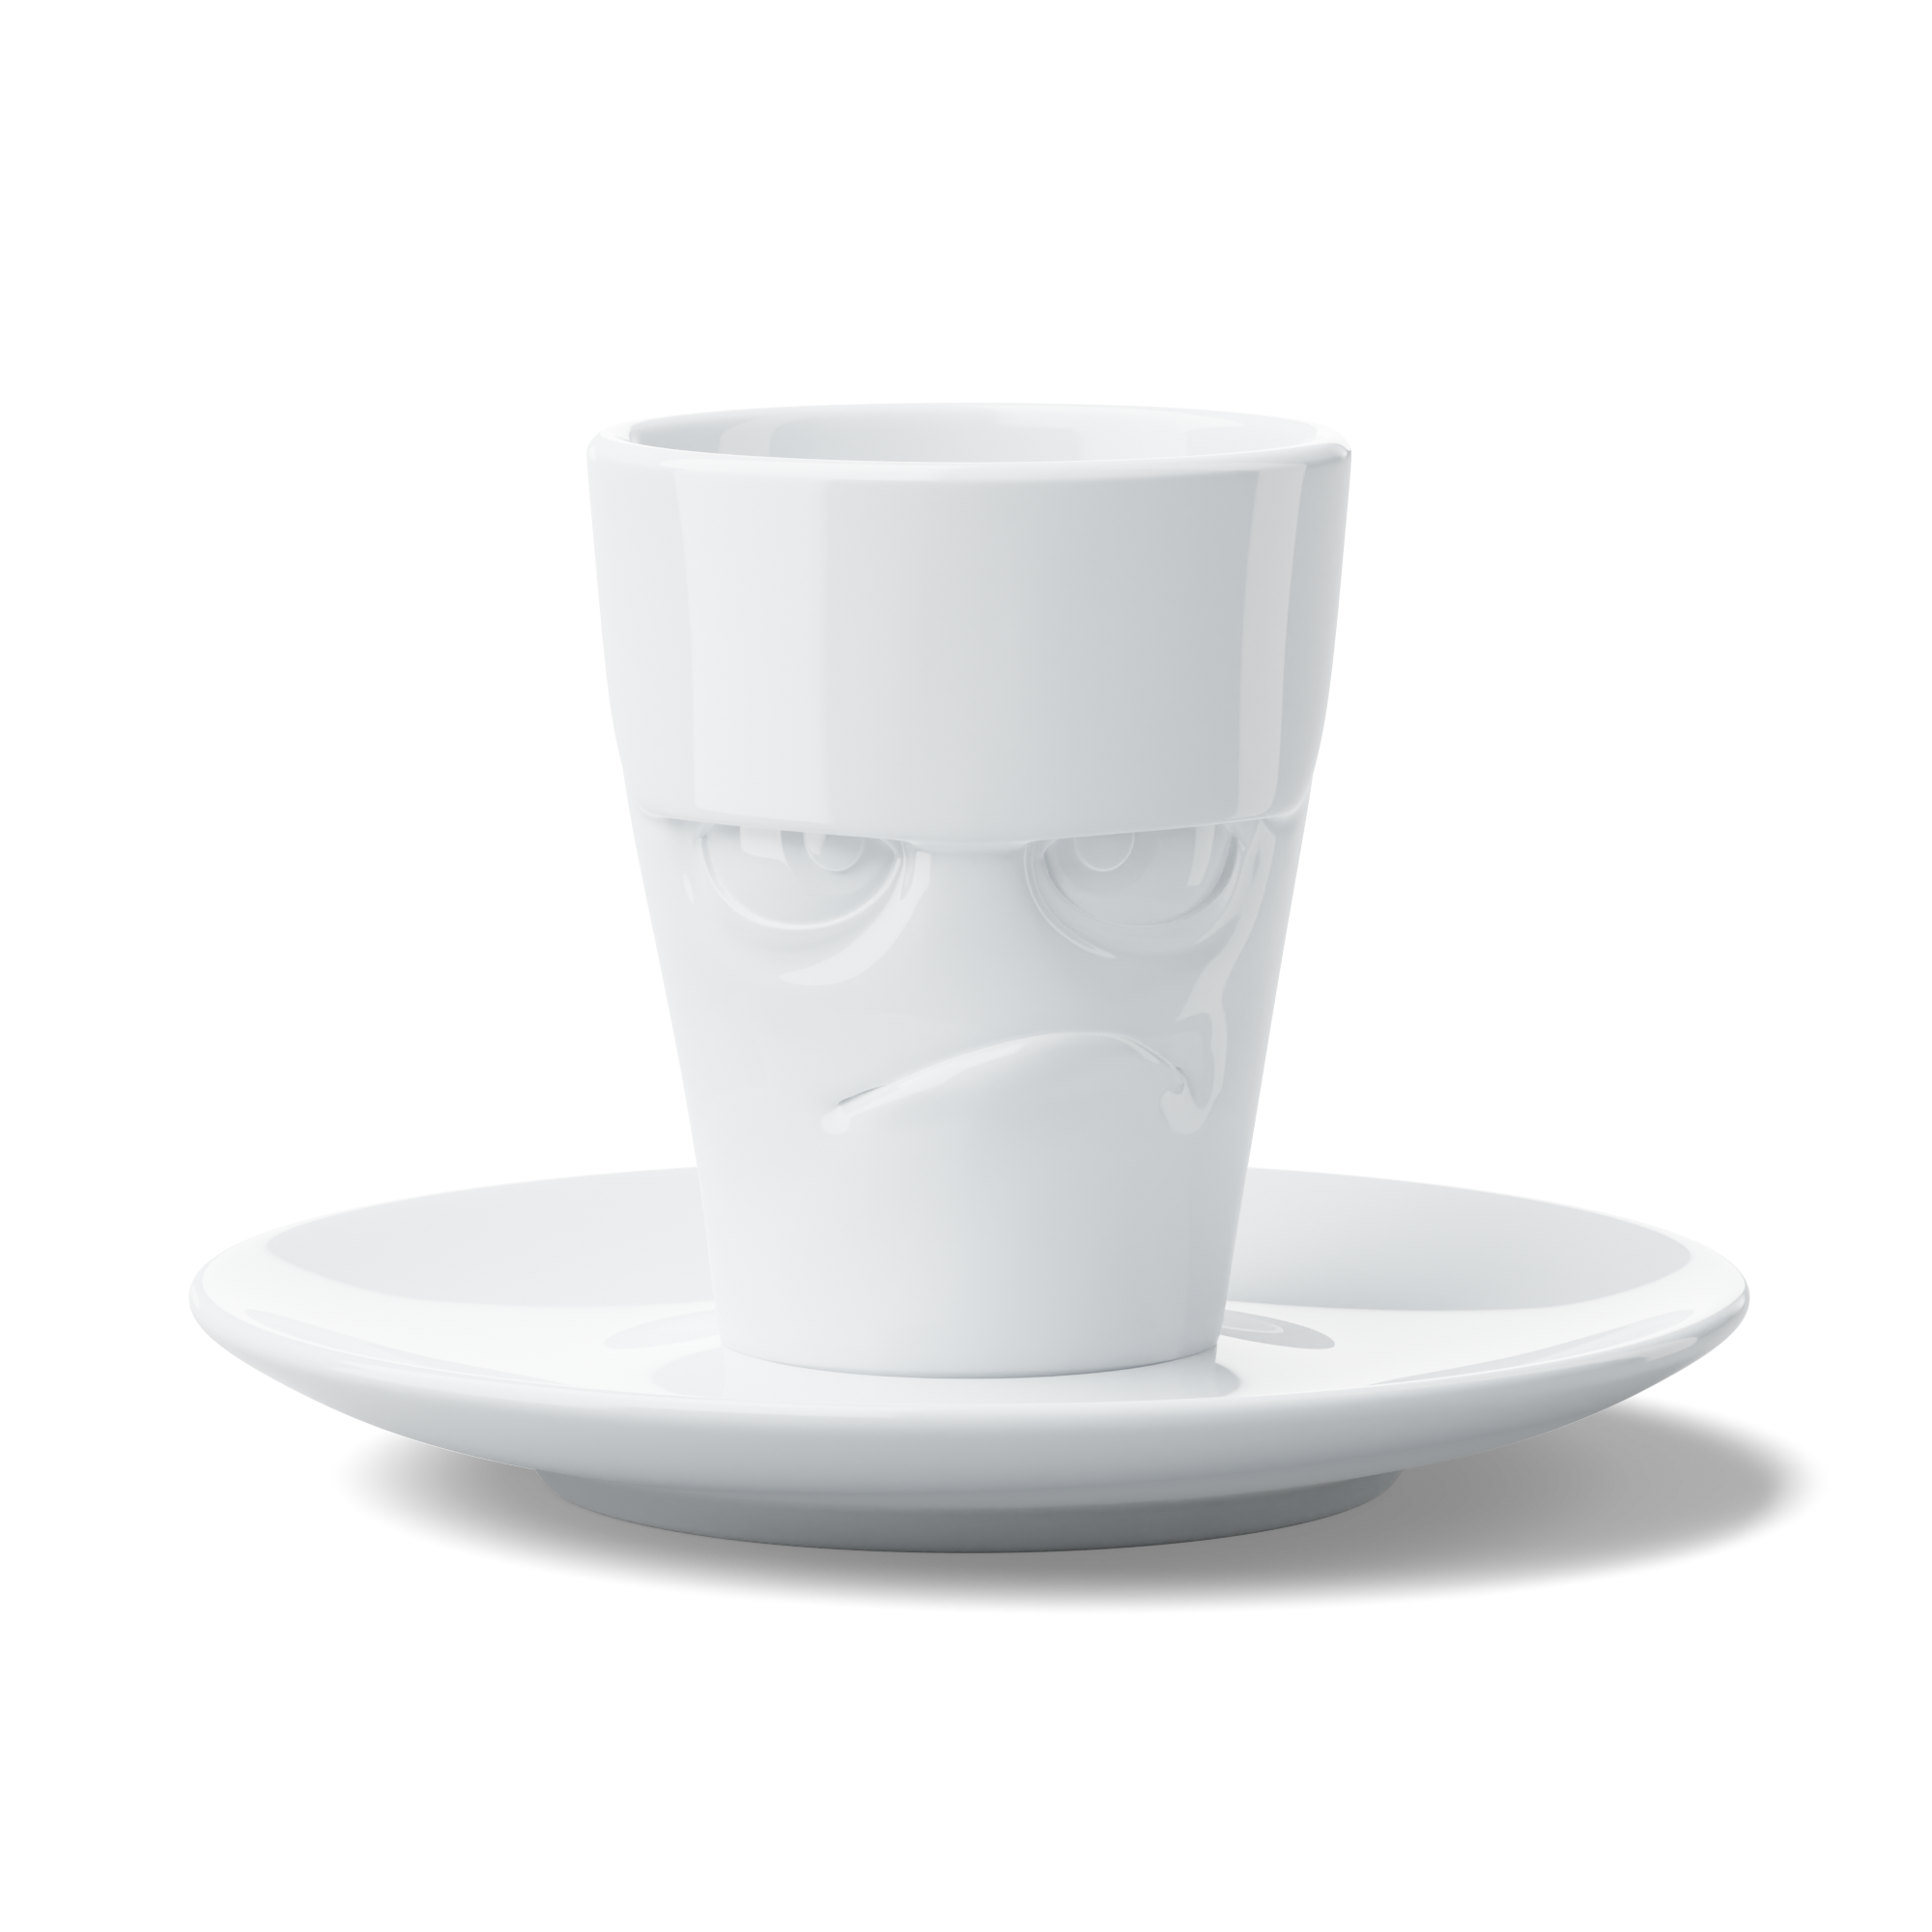 Espressotasse-Grummelig-TV-Tassen-berlindeluxe-gesicht-tasse-weiß-schlecht-gelaunt